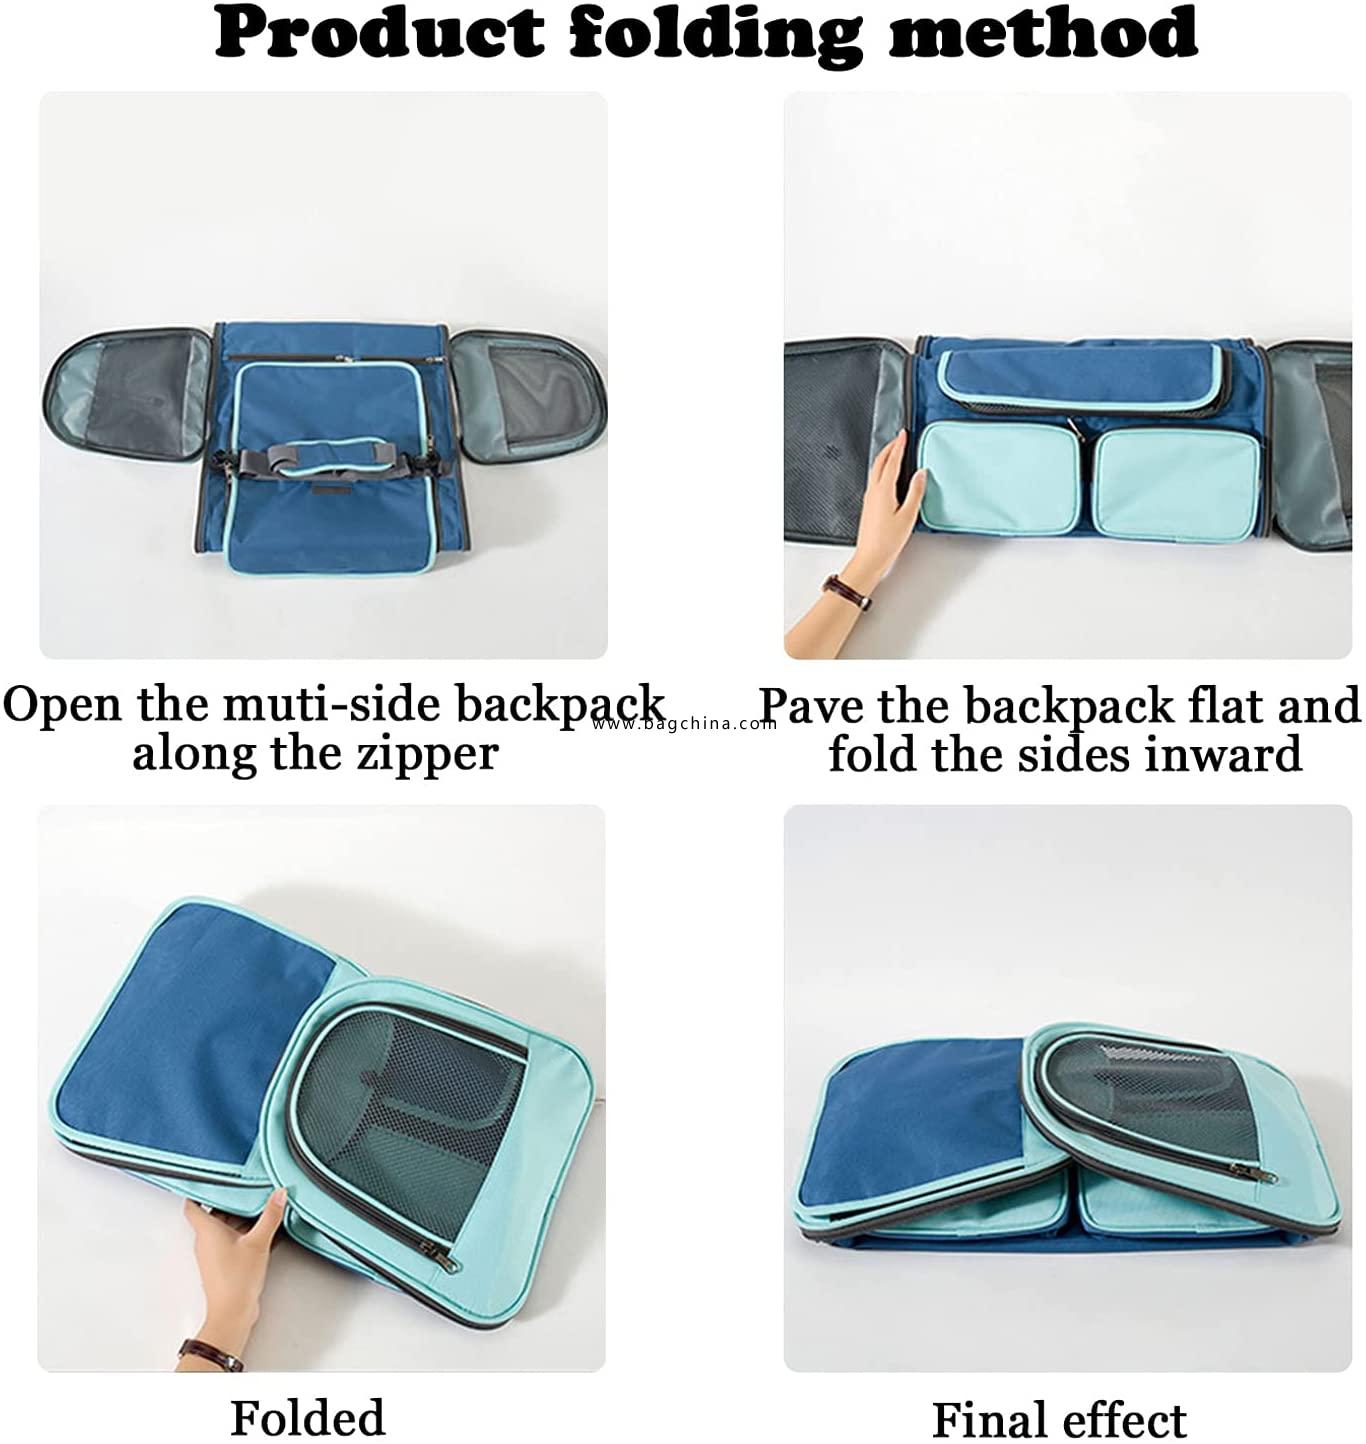  Foldable Pet Travel Bag